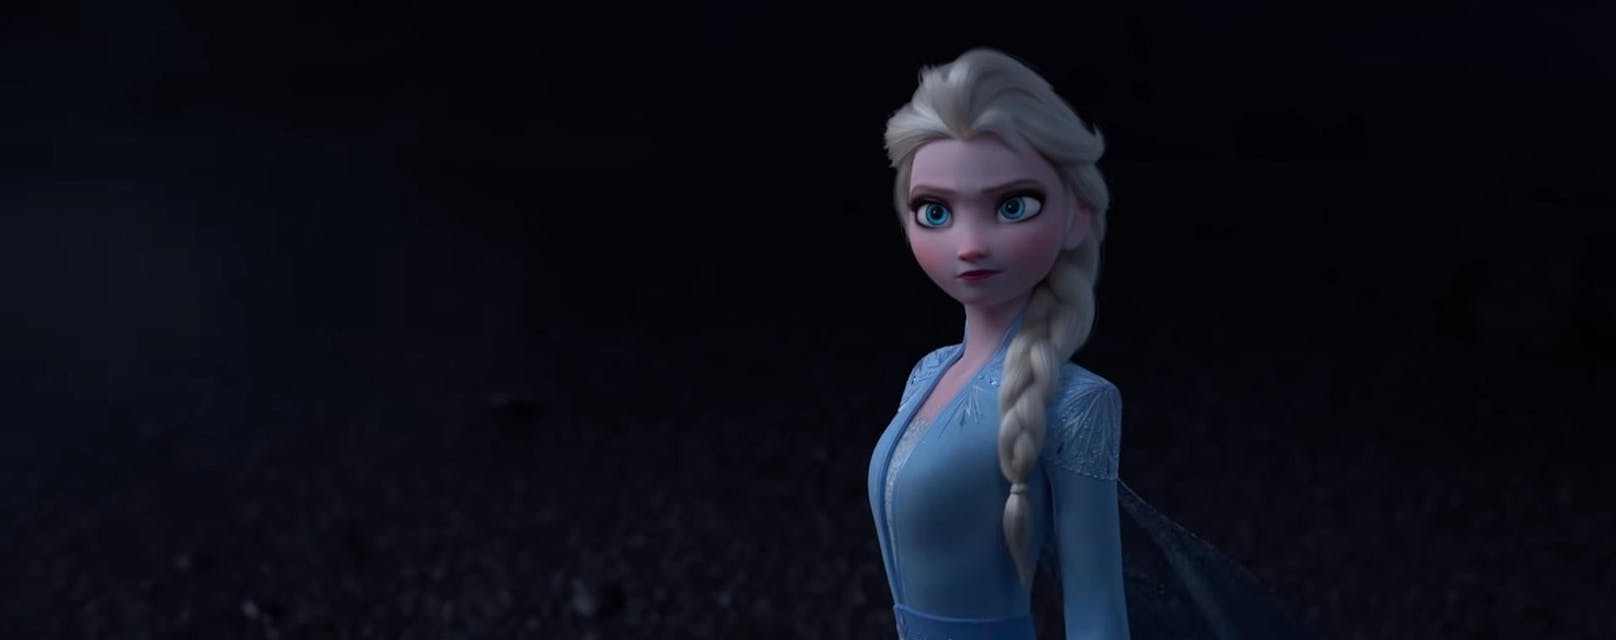 Der erste Trailer für "Eiskönigin 2" beginnt viel düsterer als sein Vorgänger. Eine sichtlich ältere Elsa ...